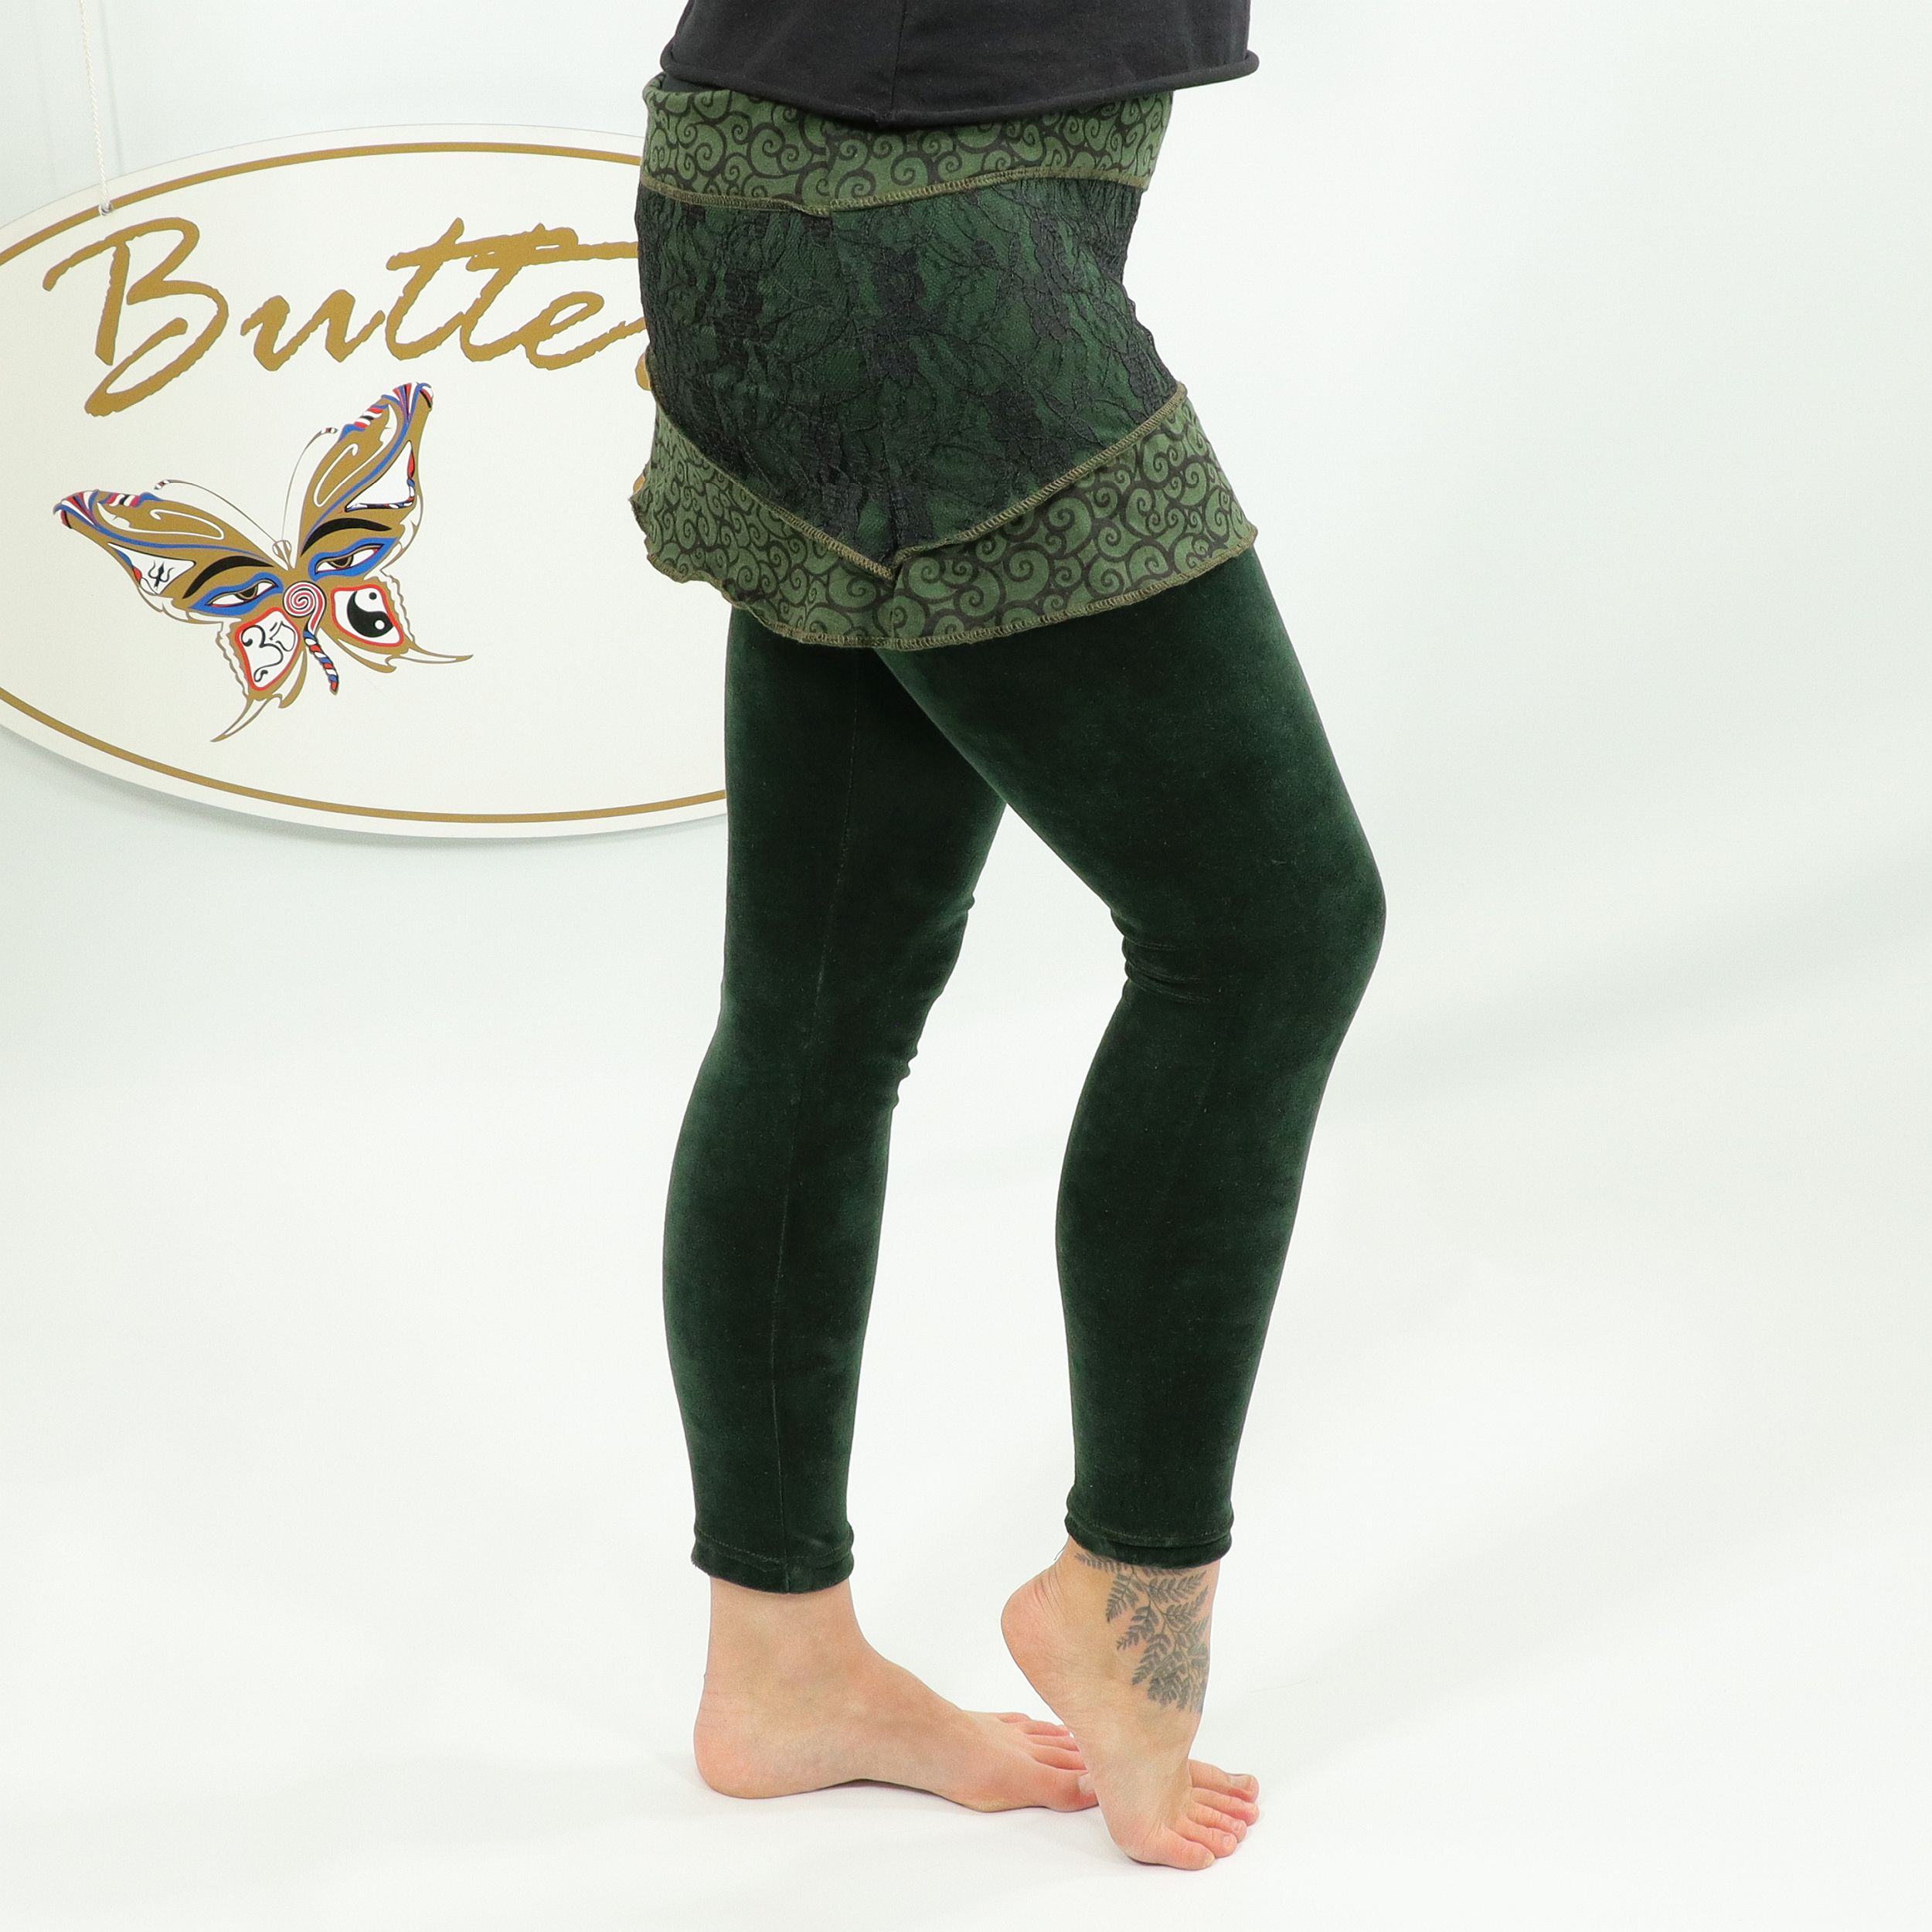 Leggings für Damen - elegante Minirock Kombi - Gothik Elfen Look Design - Baumwollsamt mit Spitze - für Dein Workout oder zur Party - Fair gehandelt aus Nepal